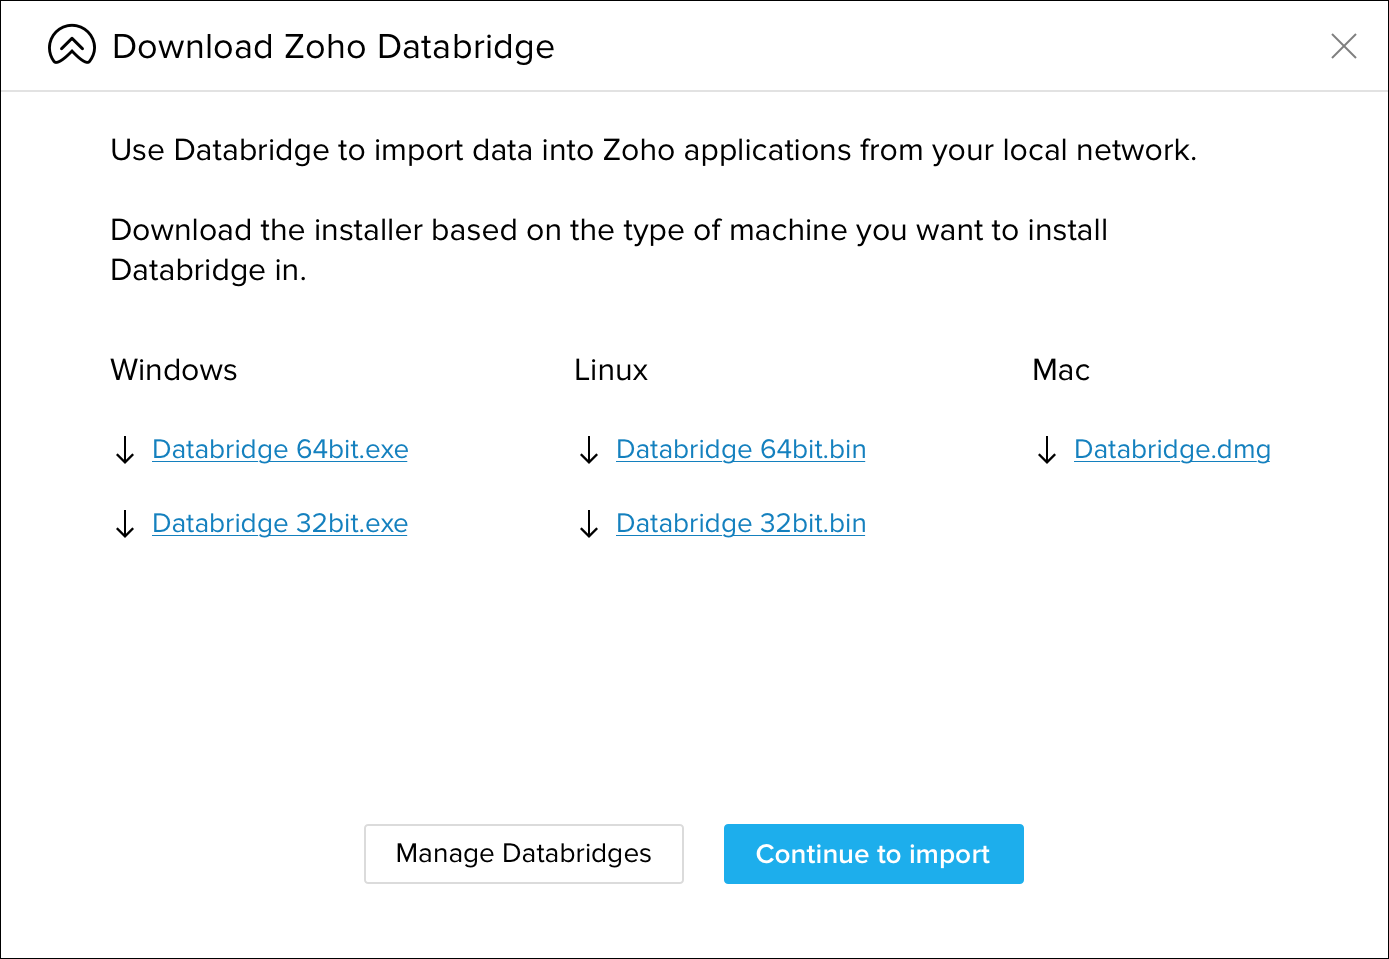 Schema van Zoho Databridge.